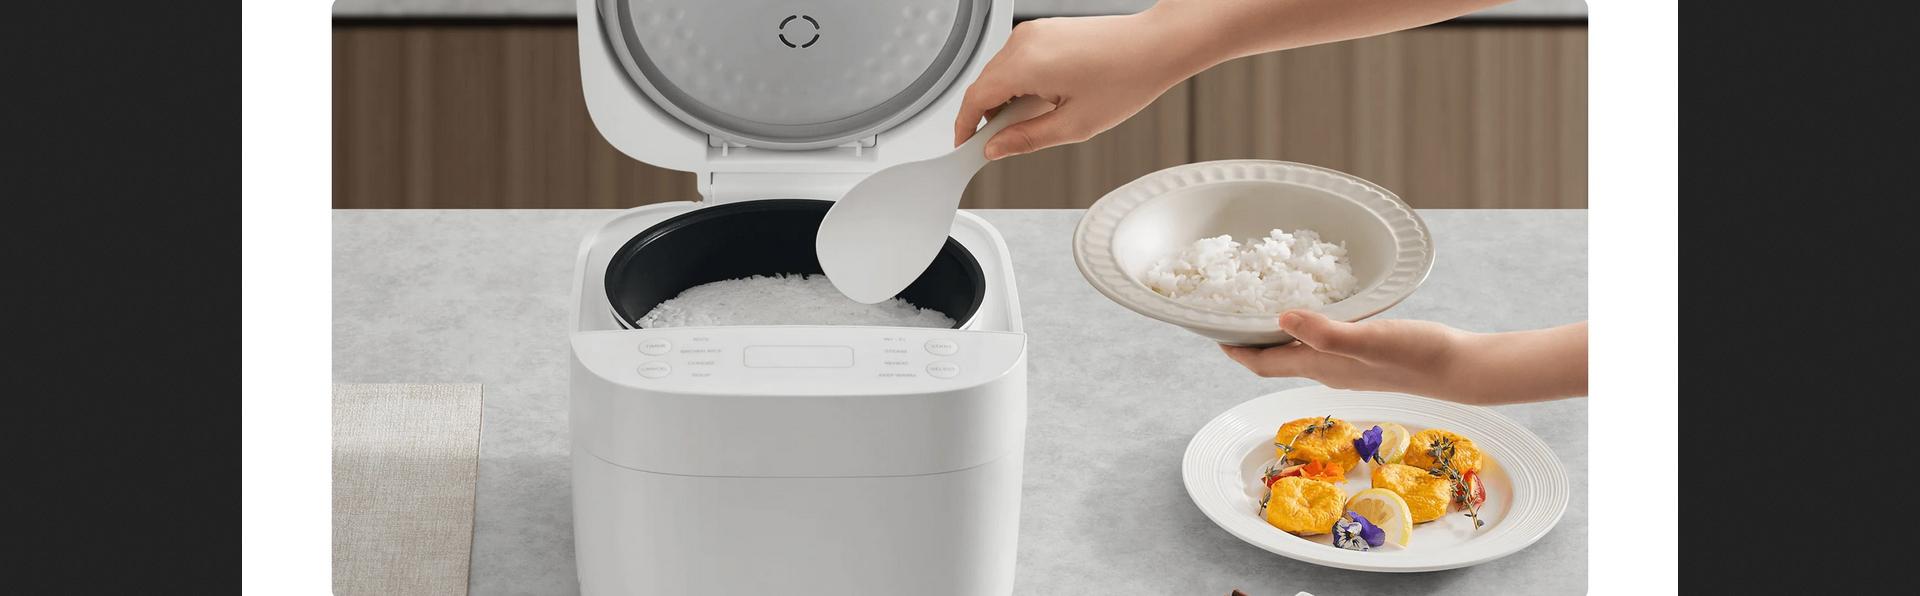 Ryżowar Xiaomi Smart Multifunctional Rice Cooker - 24-godzinny timer odłożenia startu i funkcja utrzymywania ciepła